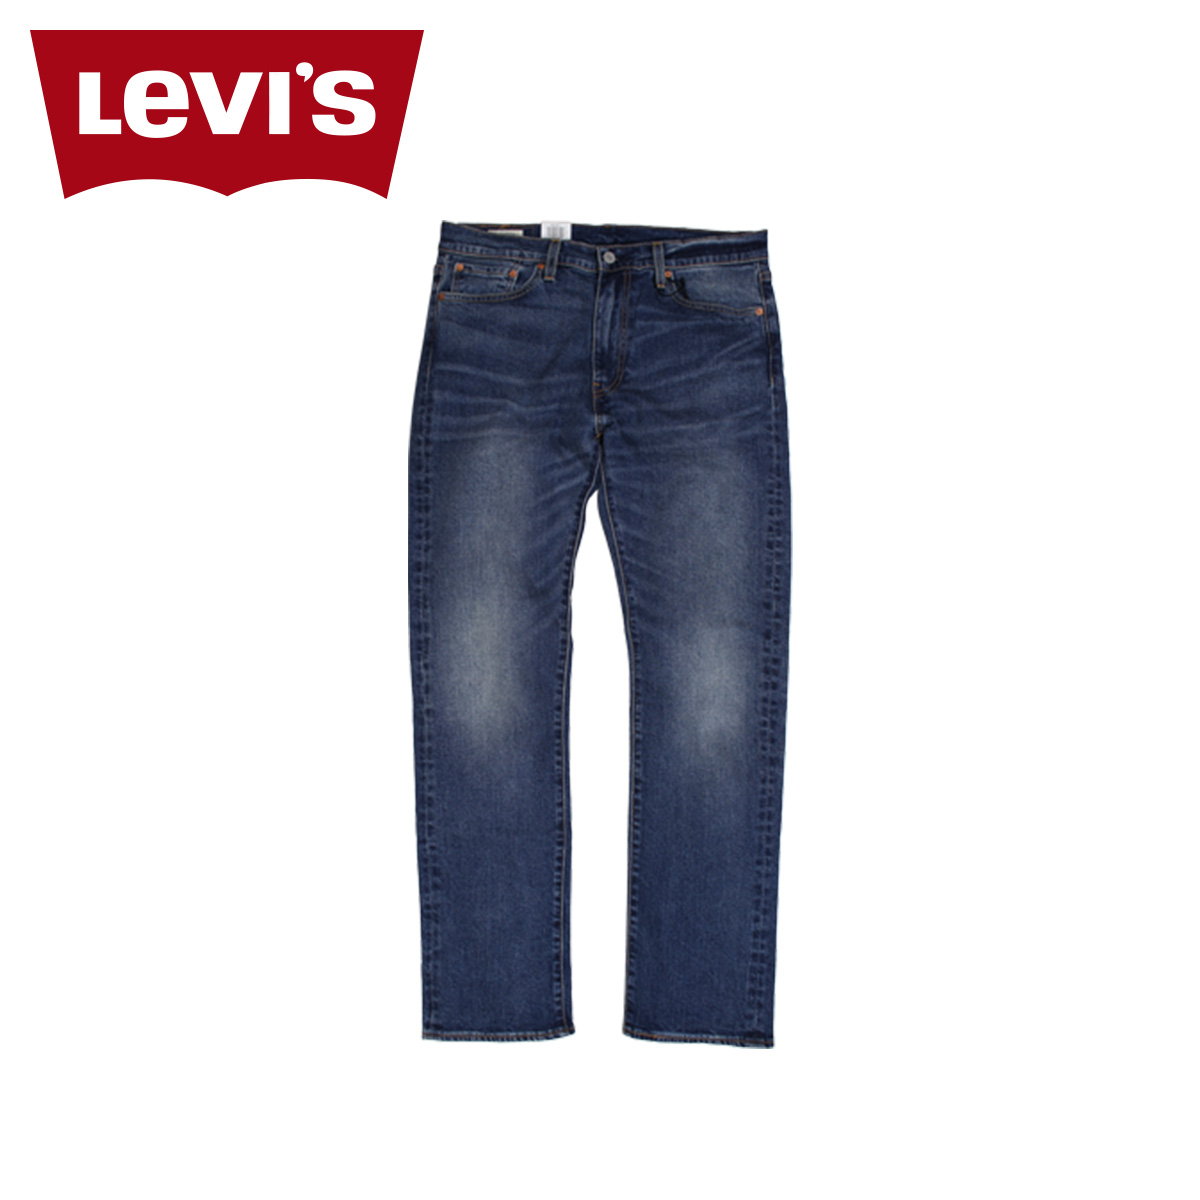 levis shop online